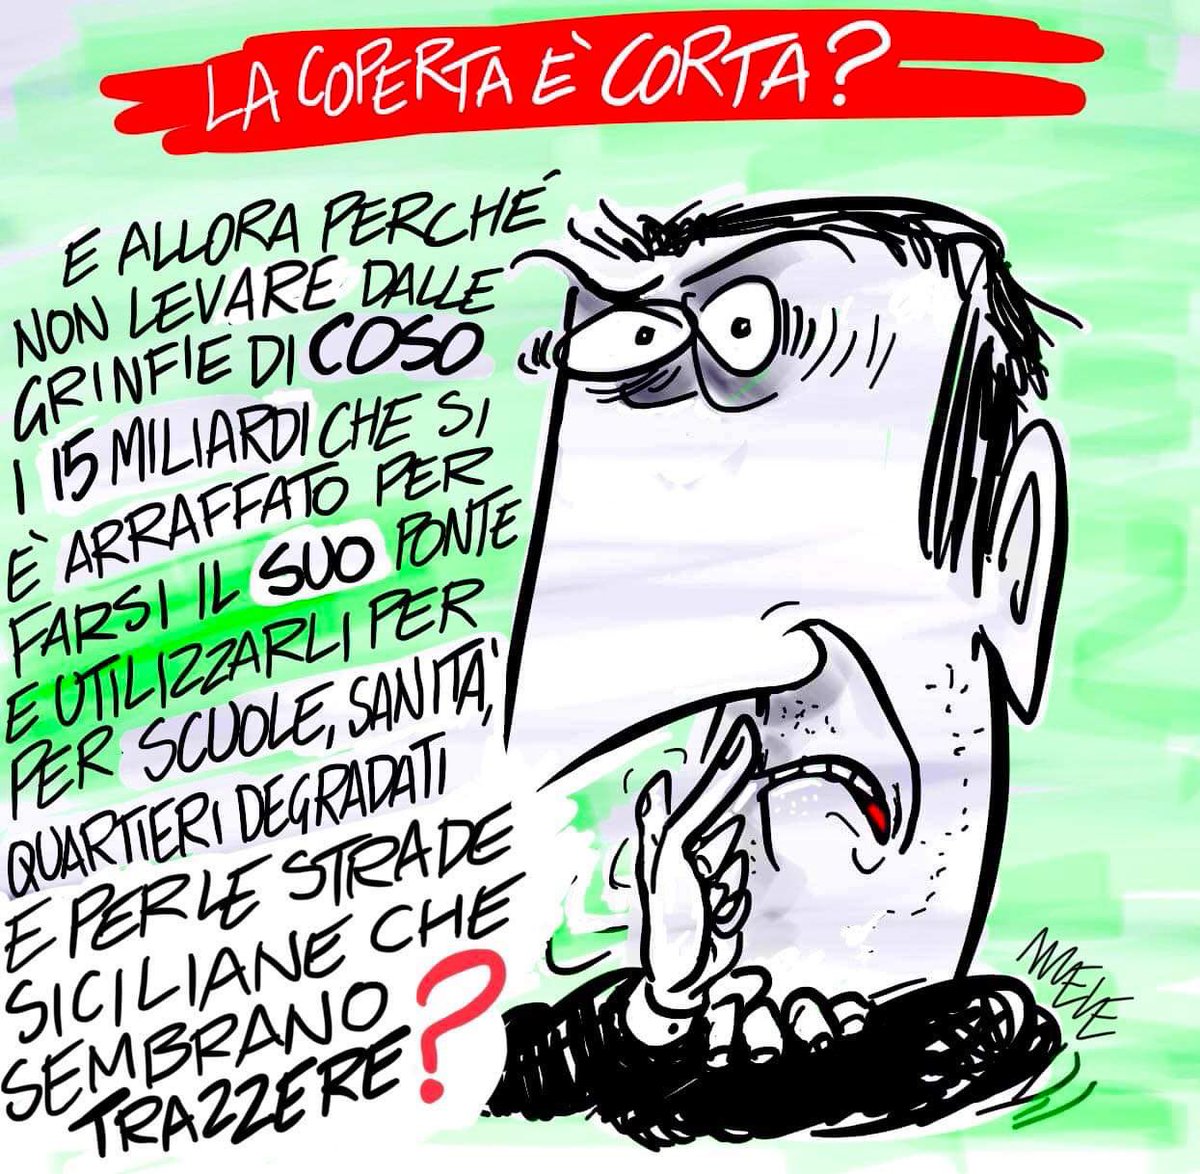 #copertacorta #pnrr #finanziaria #leggedibilancio2024 #manovrafinanziaria #finanziaria2024 #Salvini #matteosalvini #pontedimessina #pontesullostretto #facciamorete